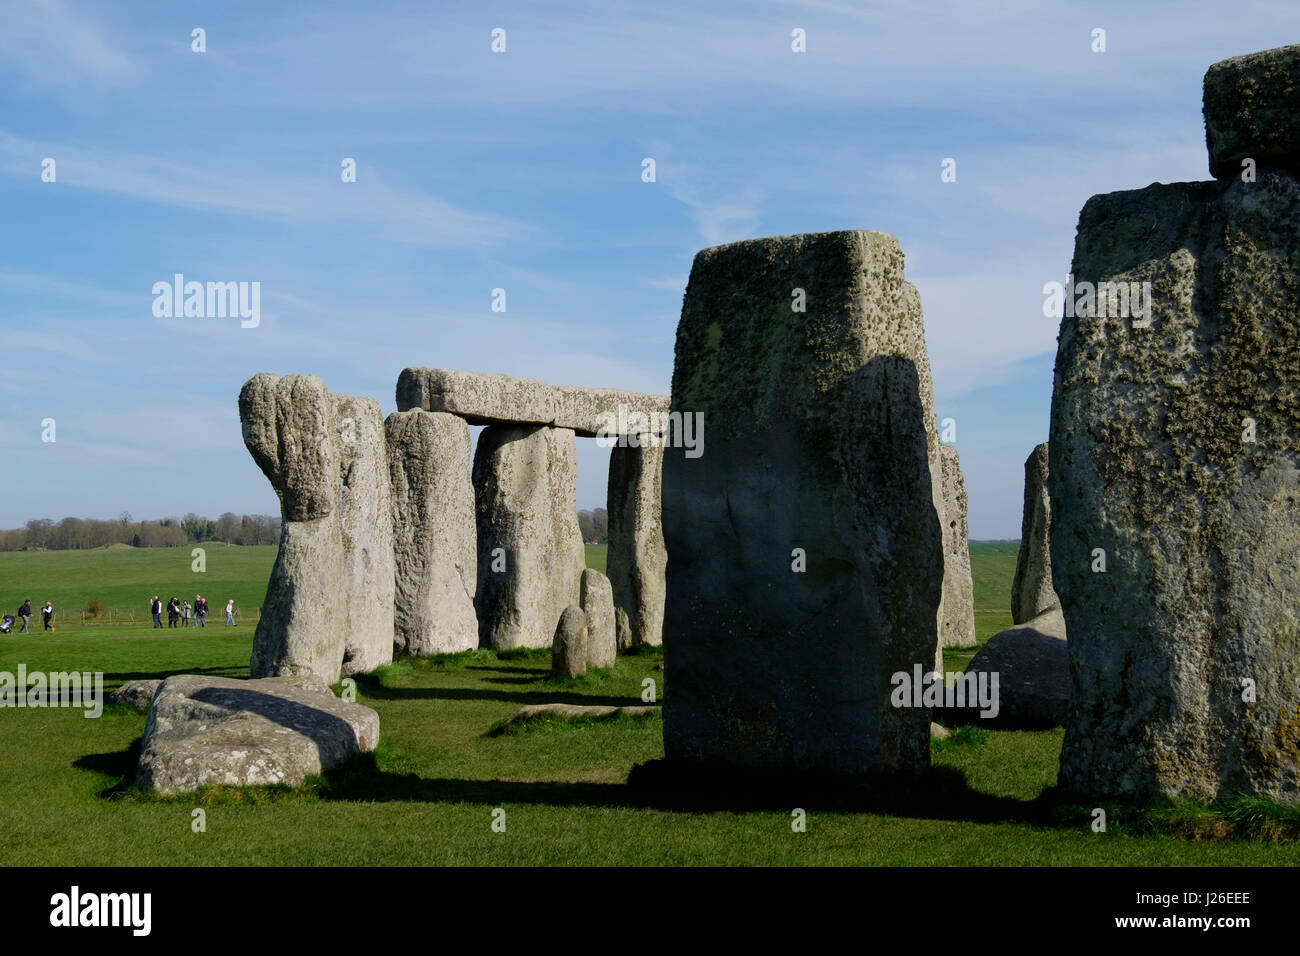 Stonehenge prehistoric monument in Wiltshire, England Stock Photo